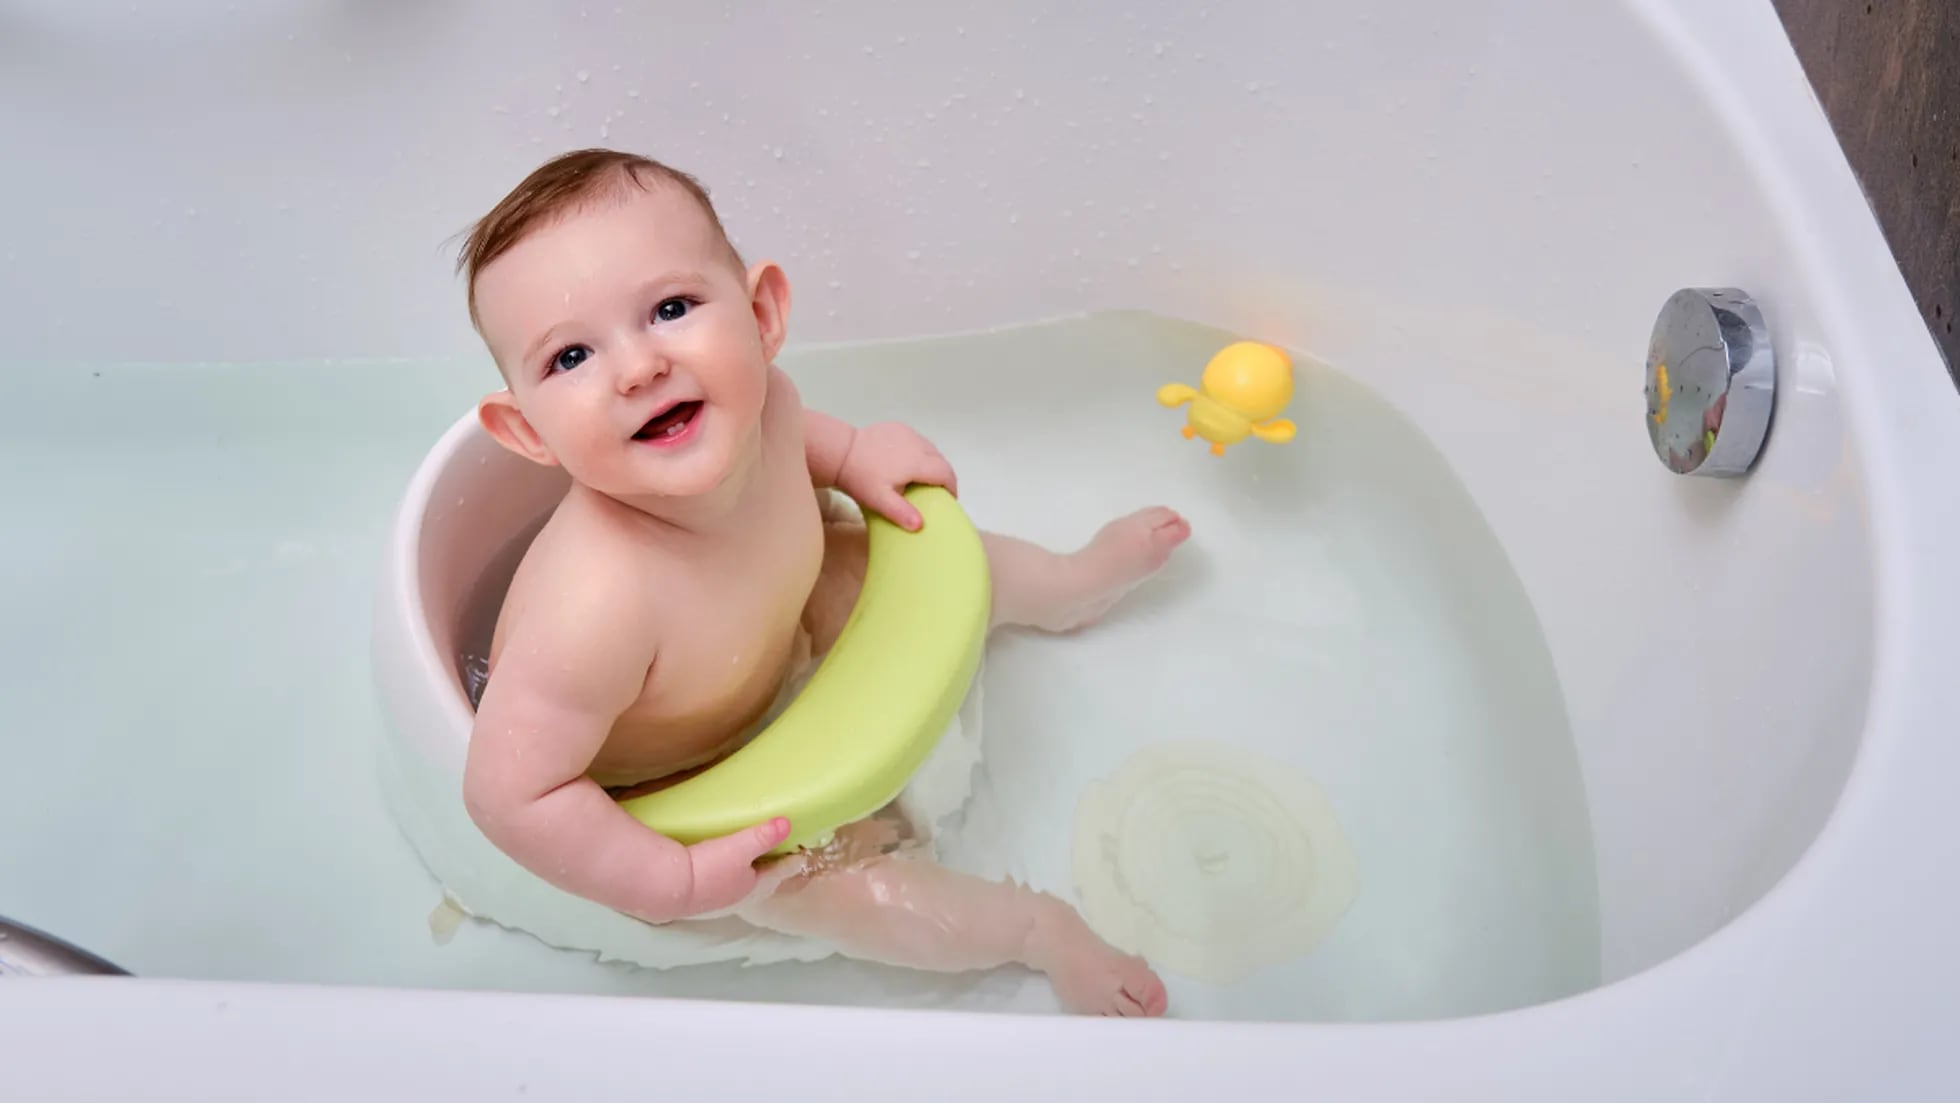 Los mejores asientos de baño para bebés, Escaparate: compras y ofertas